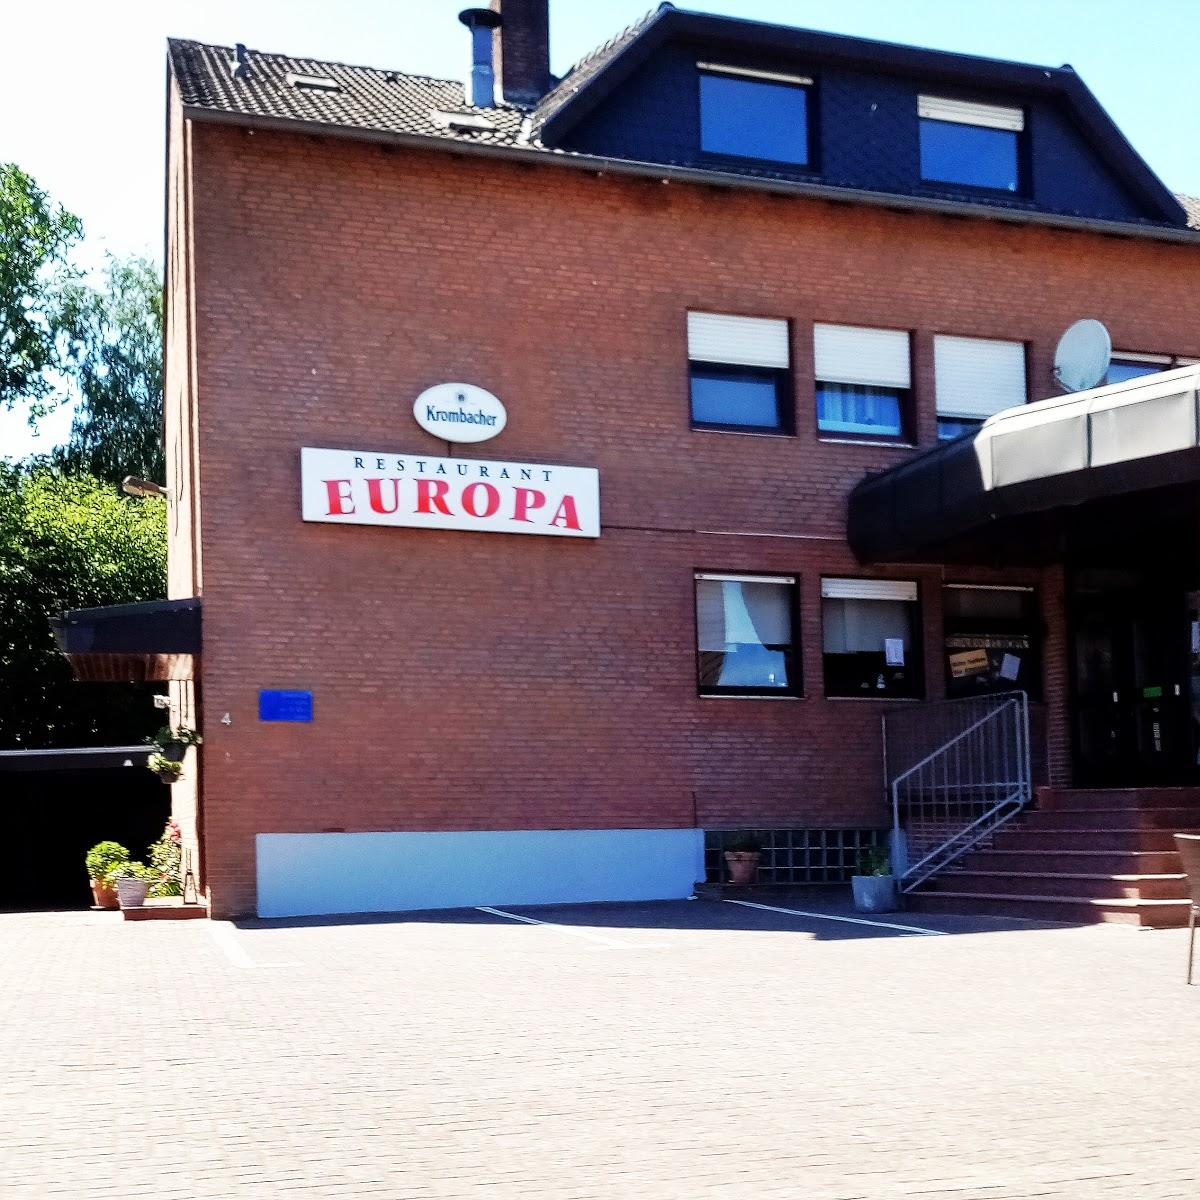 Restaurant "Restaurant Europa" in Gronau (Westfalen)